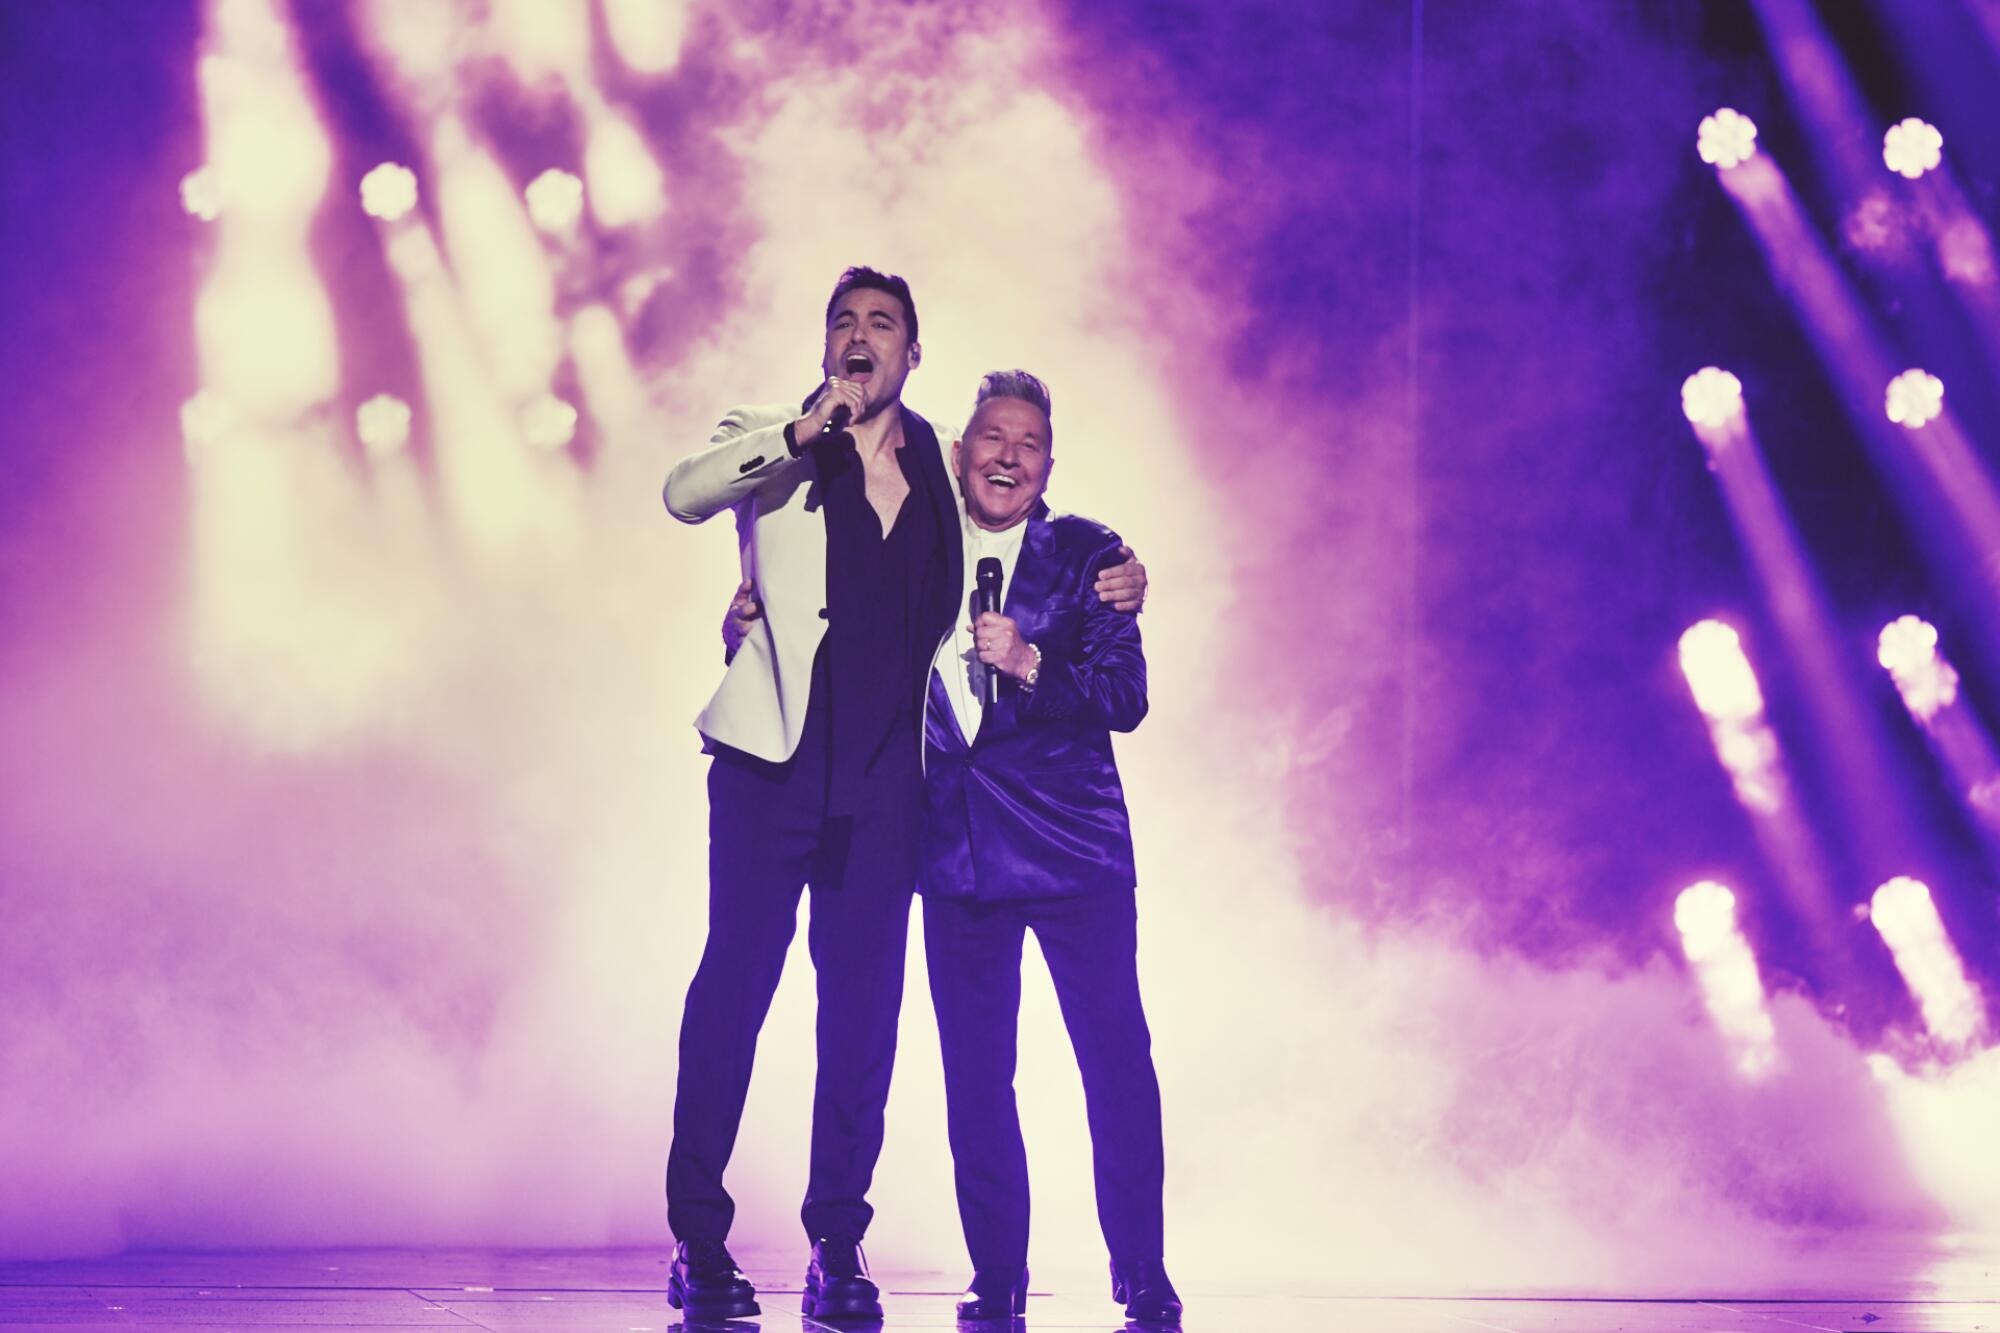 Ricardo Montaner y Carlos Rivera hicieron vibrar a la audincia con sus interpretación a dúo.